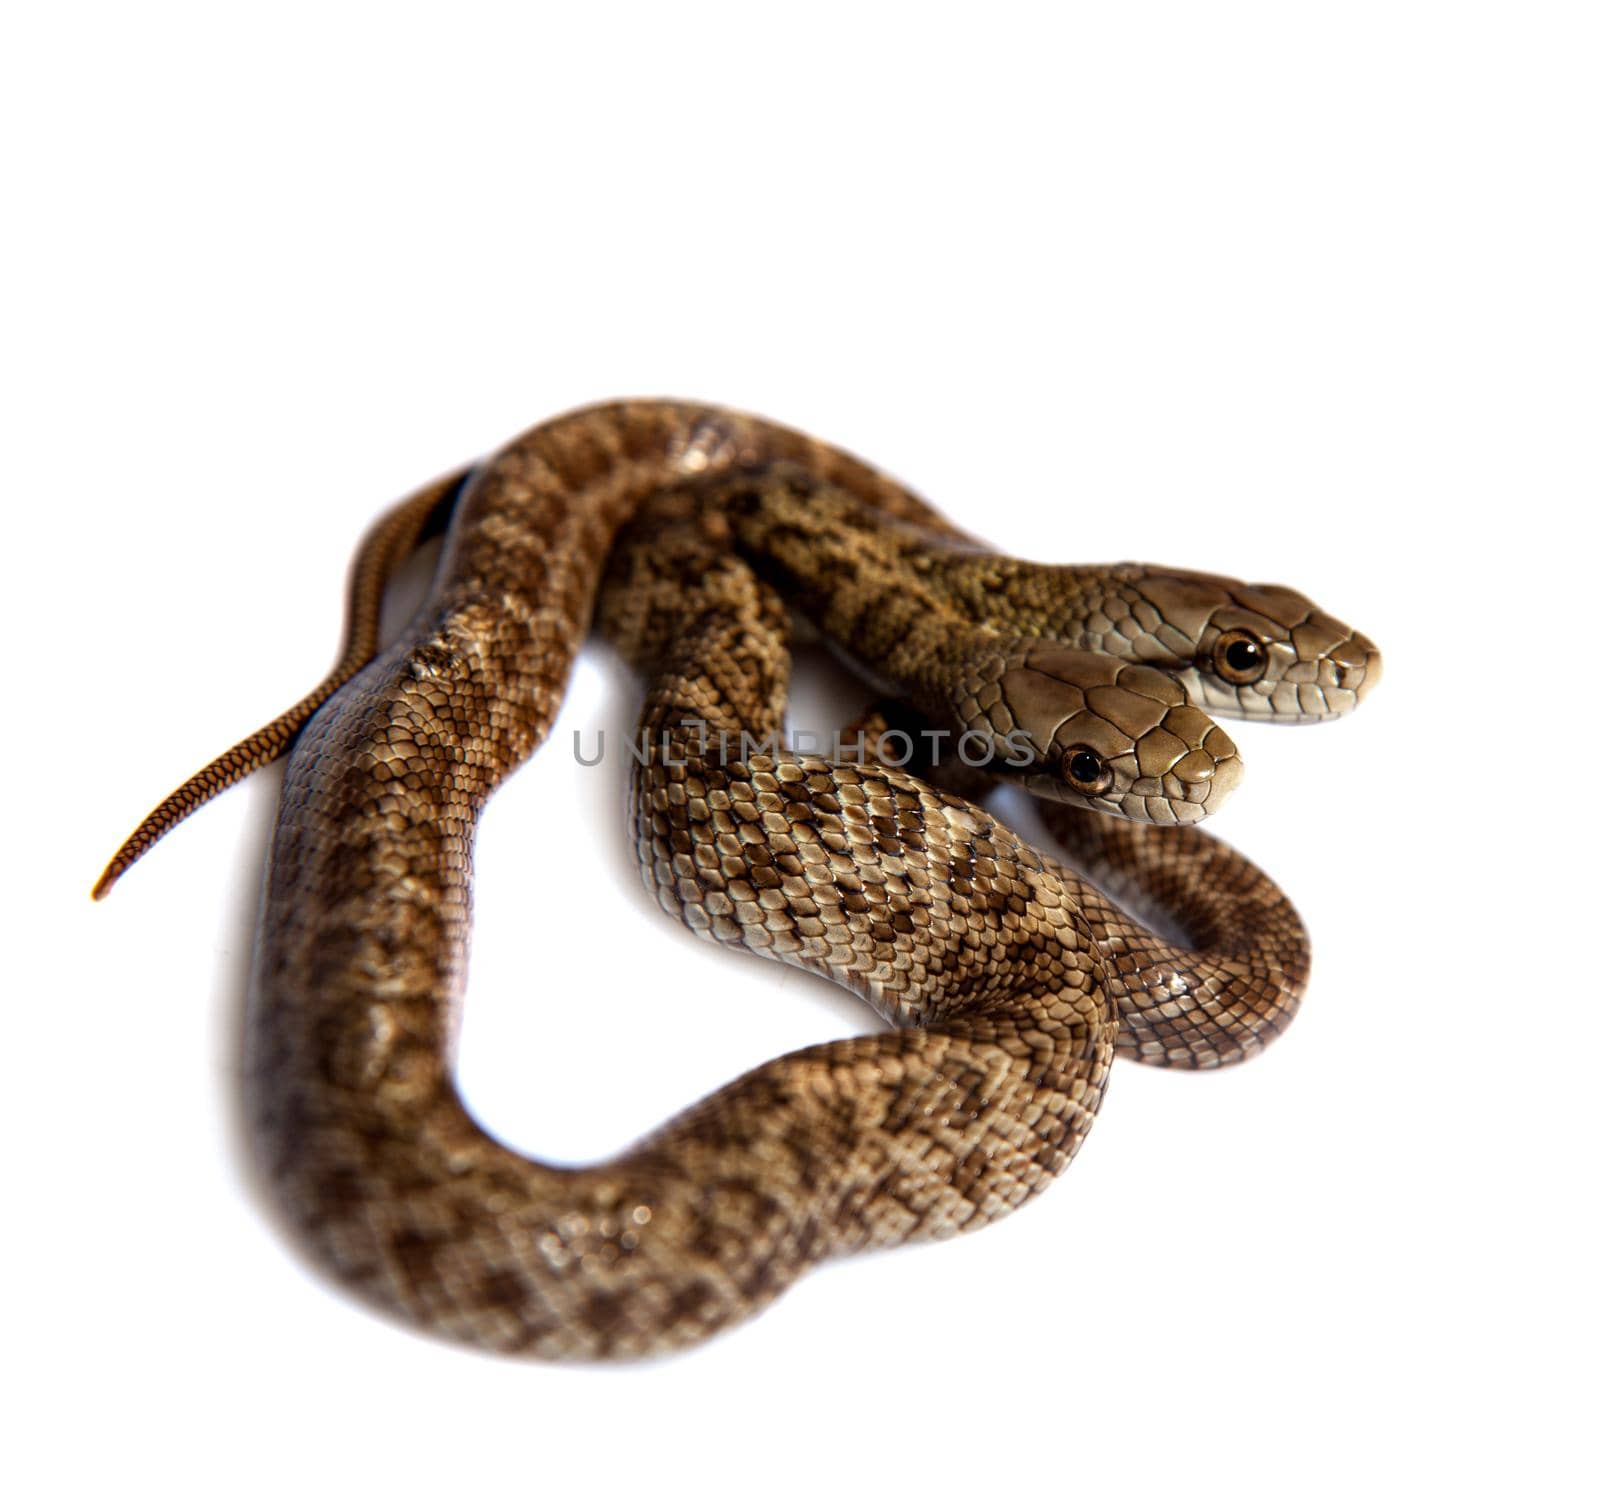 The two headed Japanese rat snake, Elaphe climacophora, isolated on white background